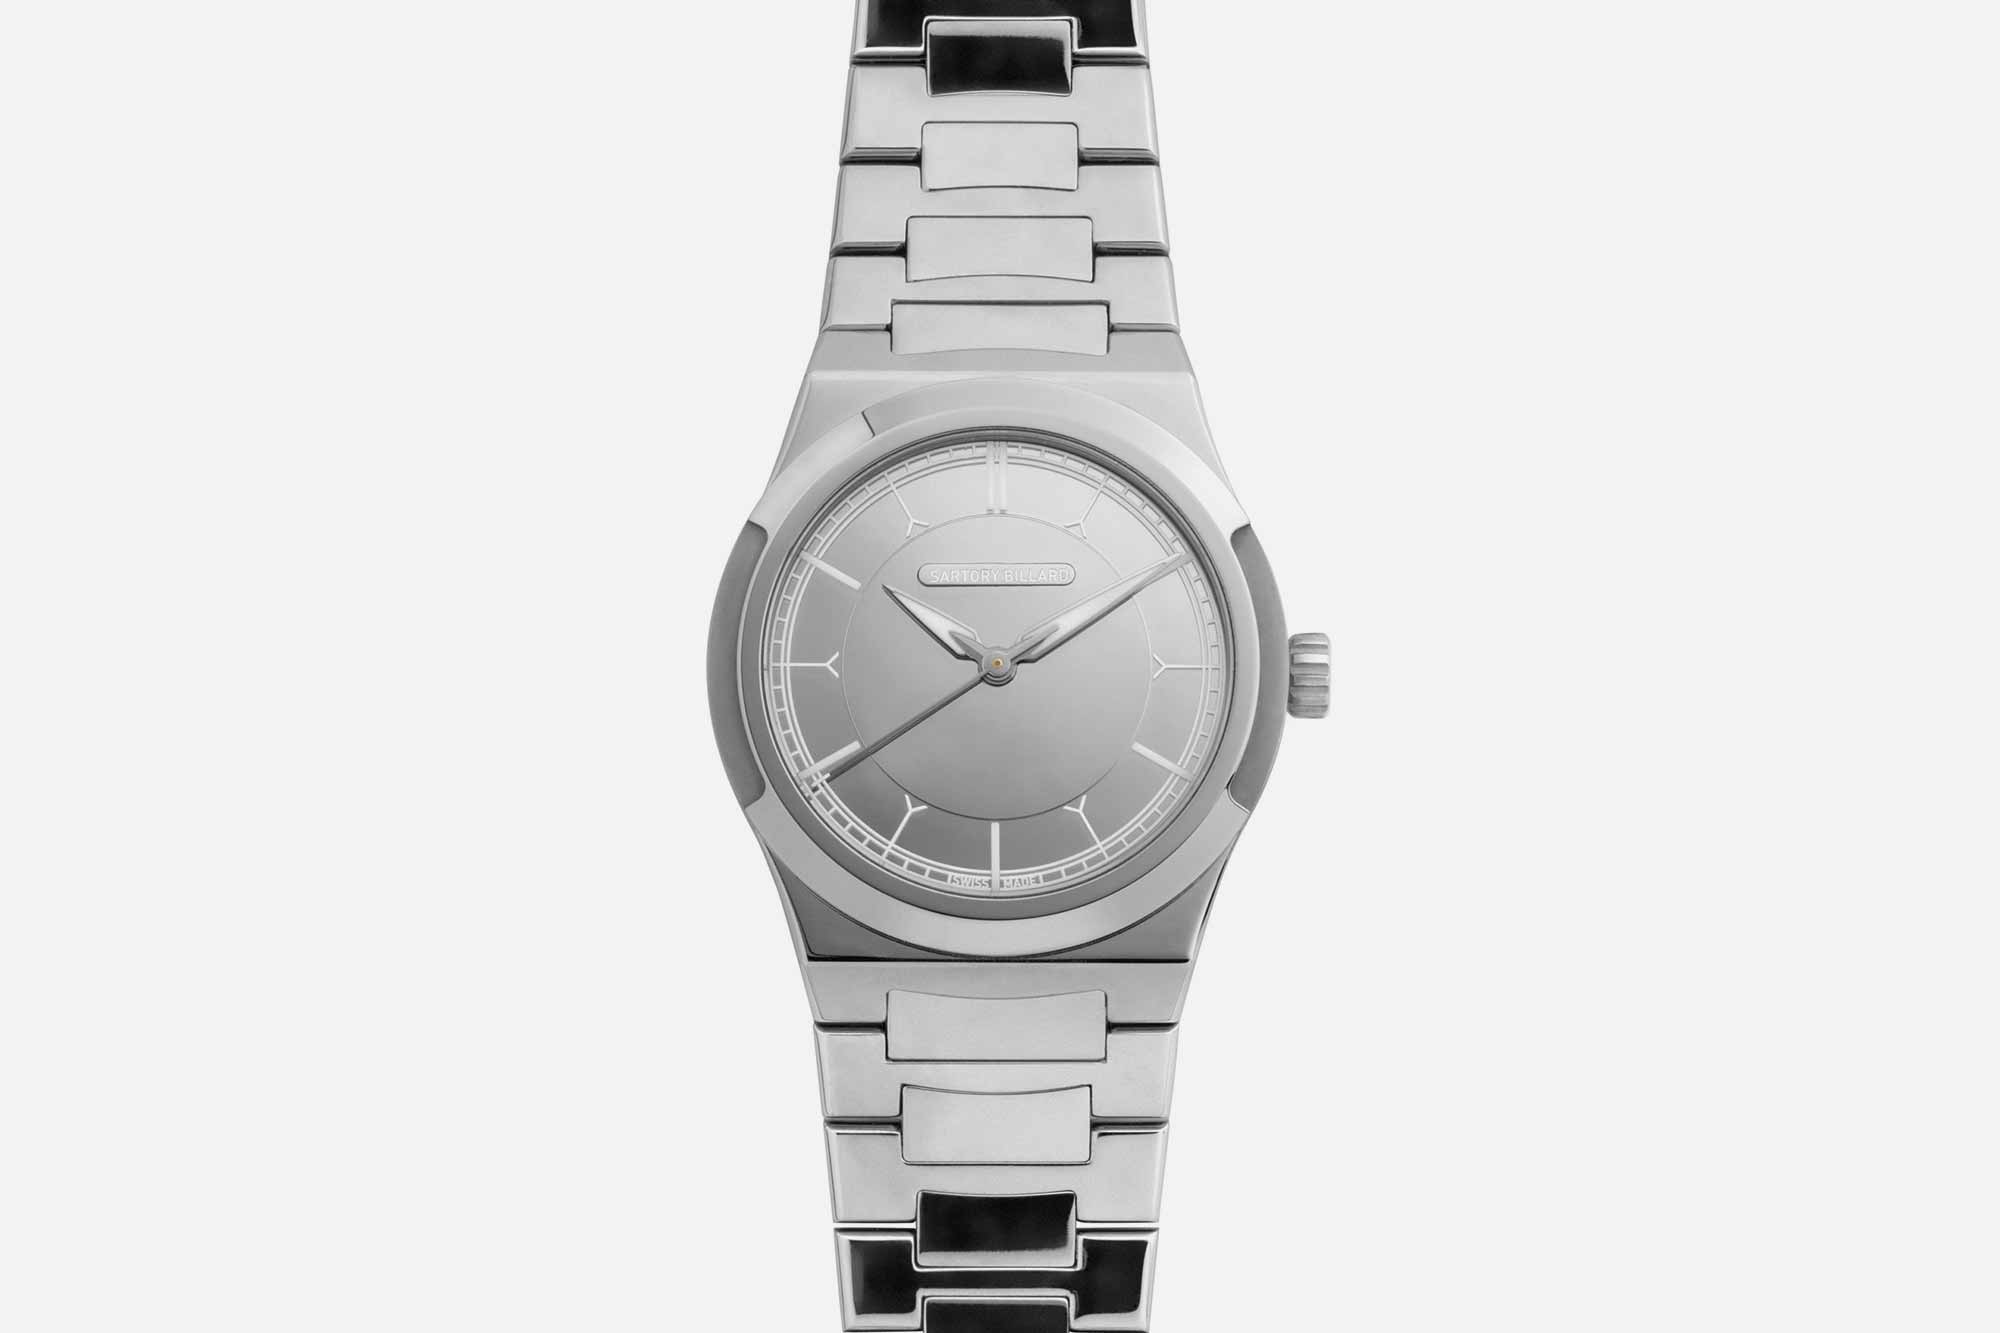 Hands-On: Speake-Marin Openworked Sandblasted Titanium Watch